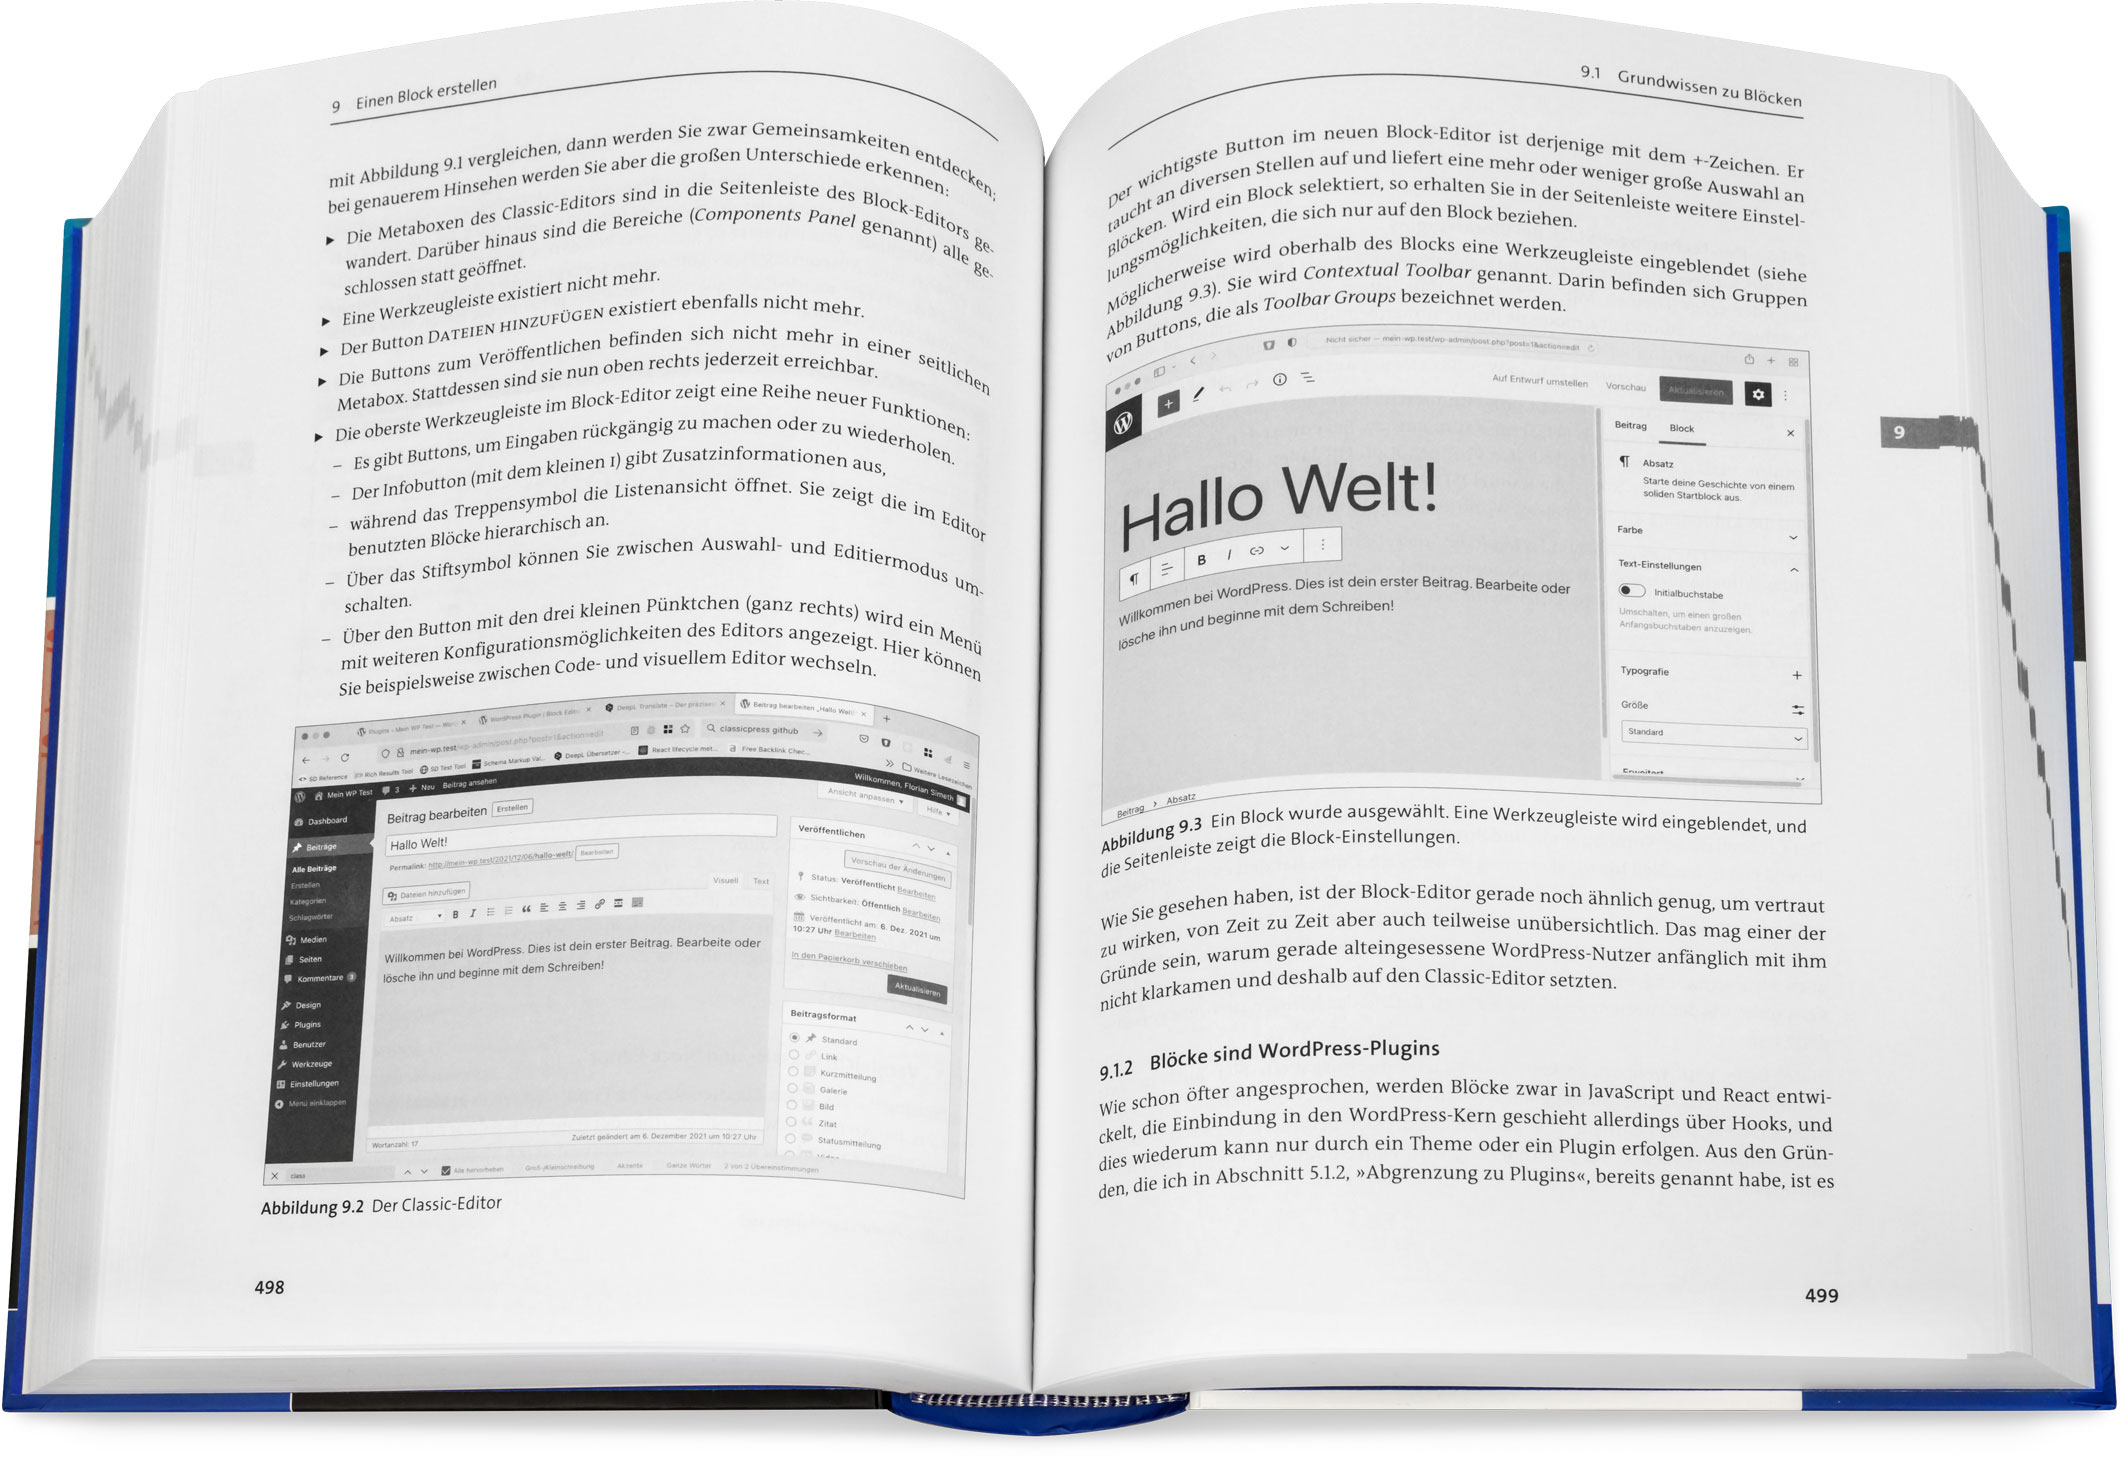 Blick ins Buch: WordPress - Plugins, Themes und Blöcke entwickeln